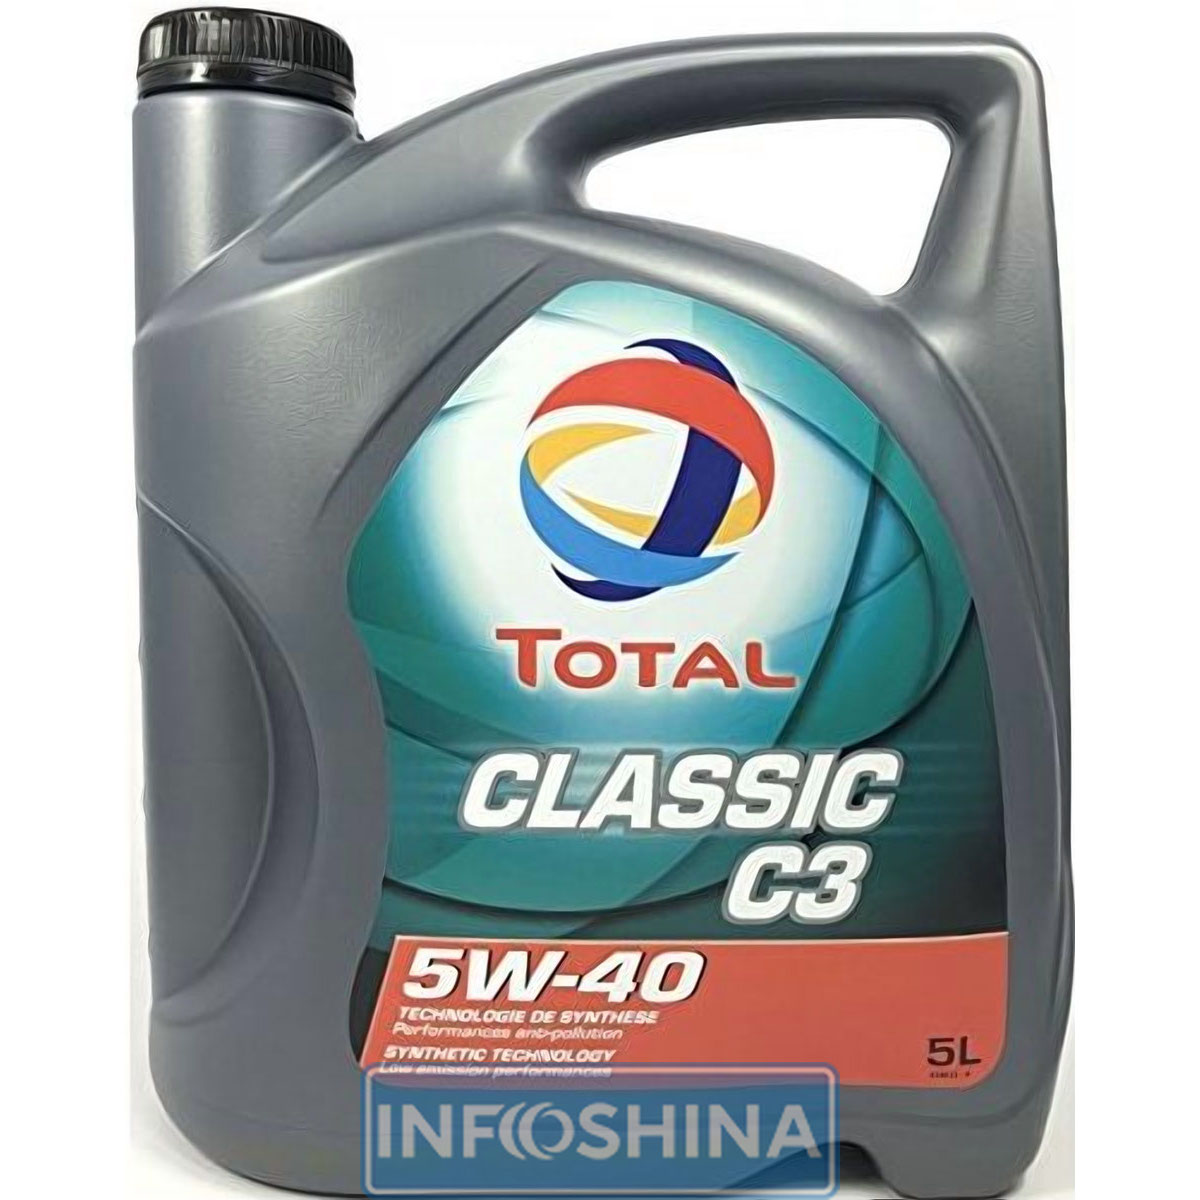 Total ClassicC3 5W-40